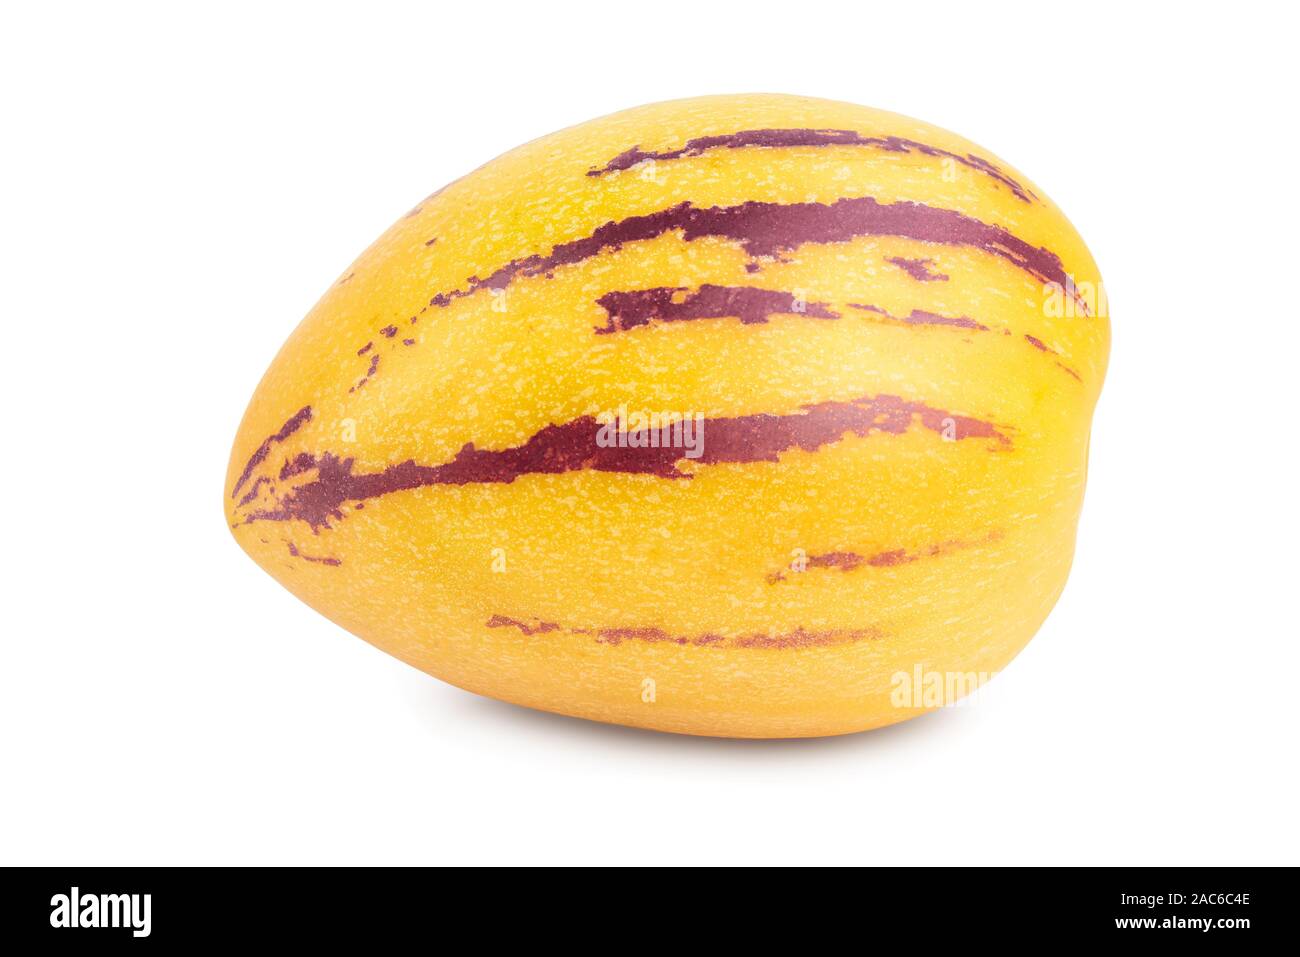 Fresh Pepino fruit isolated on white background. Stock Photo